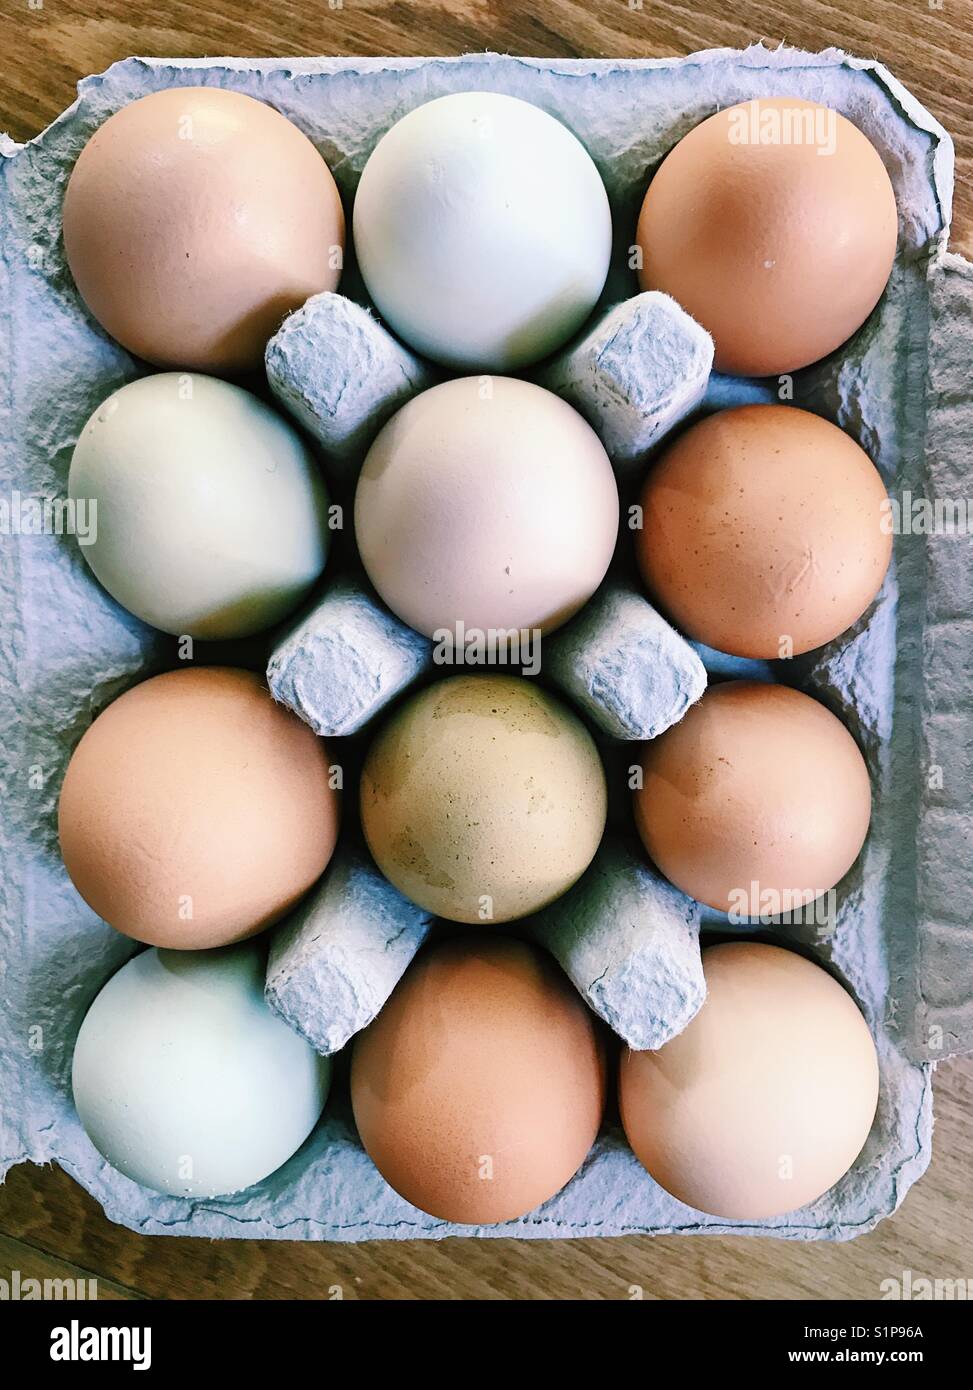 A dozen eggs in an eggbox. Stock Photo